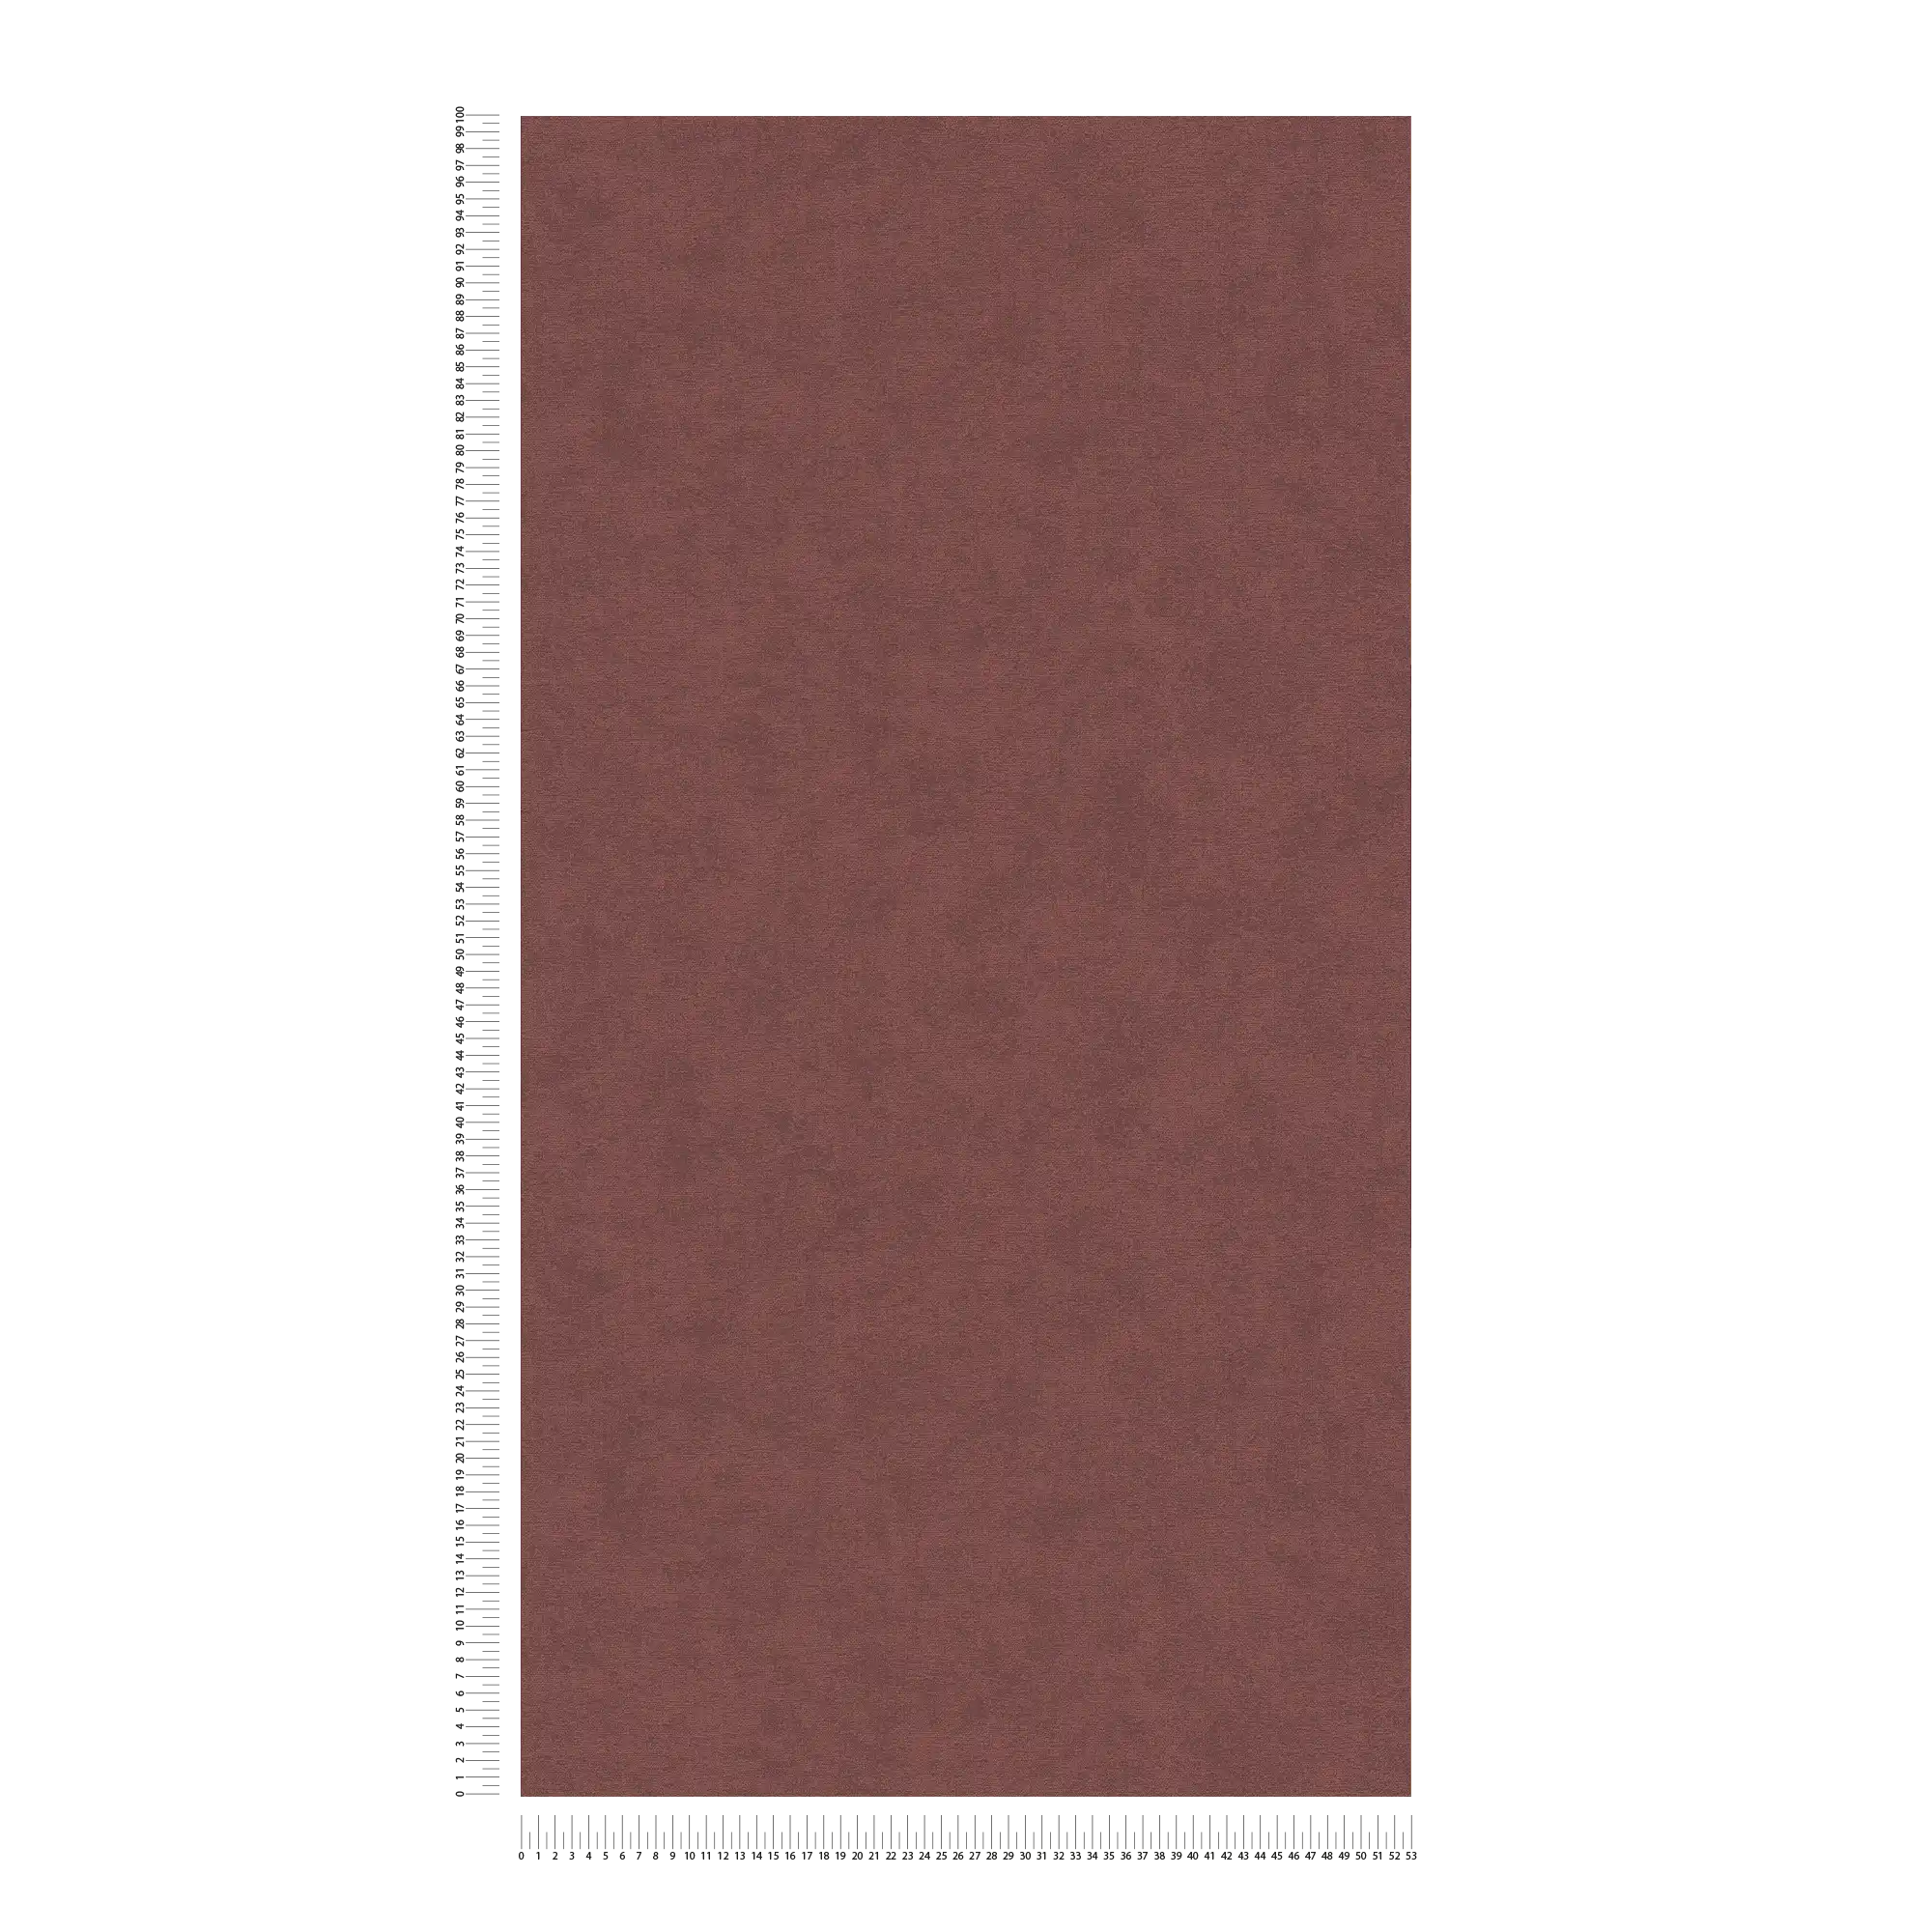             Uni Vliestapete mit dezenter Oberflächenstruktur – Rot
        